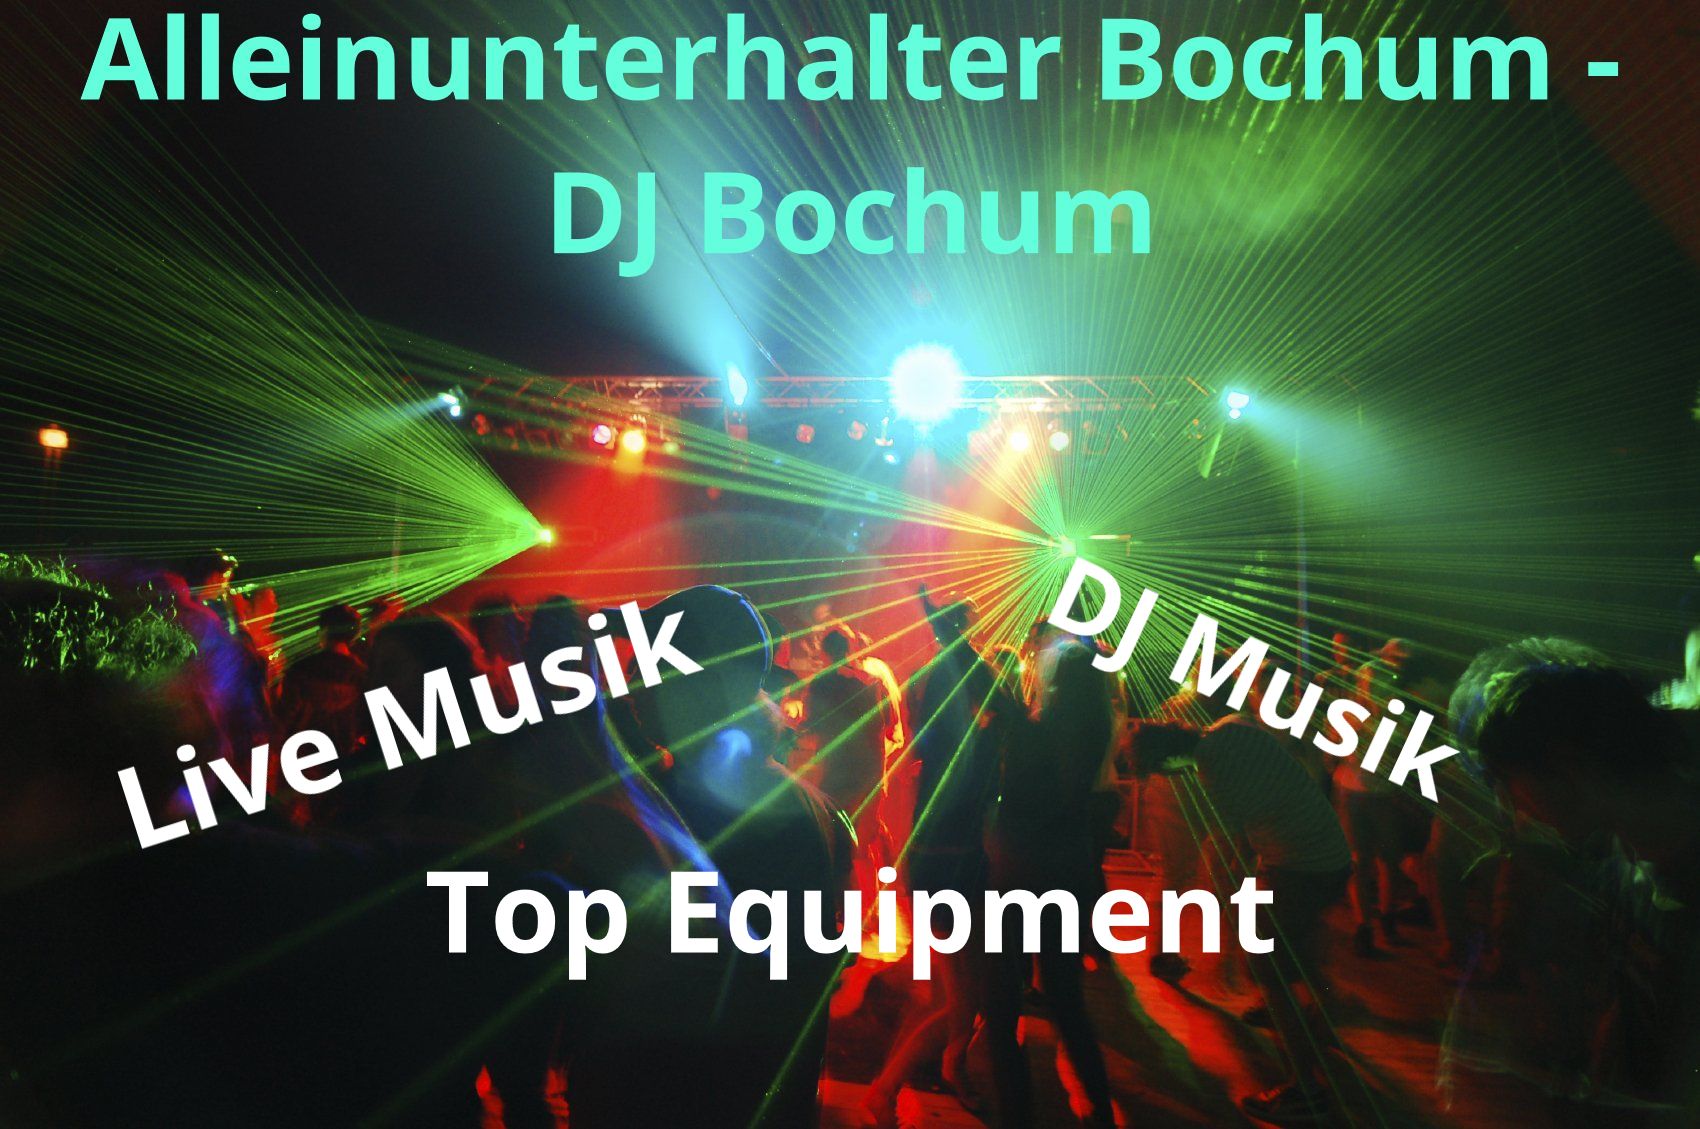 Alleinunterhalter Buchum - DJ Bochum - Keyboarder Karl - Licht und Musik Technik - Eigentum Keyboarder Karl